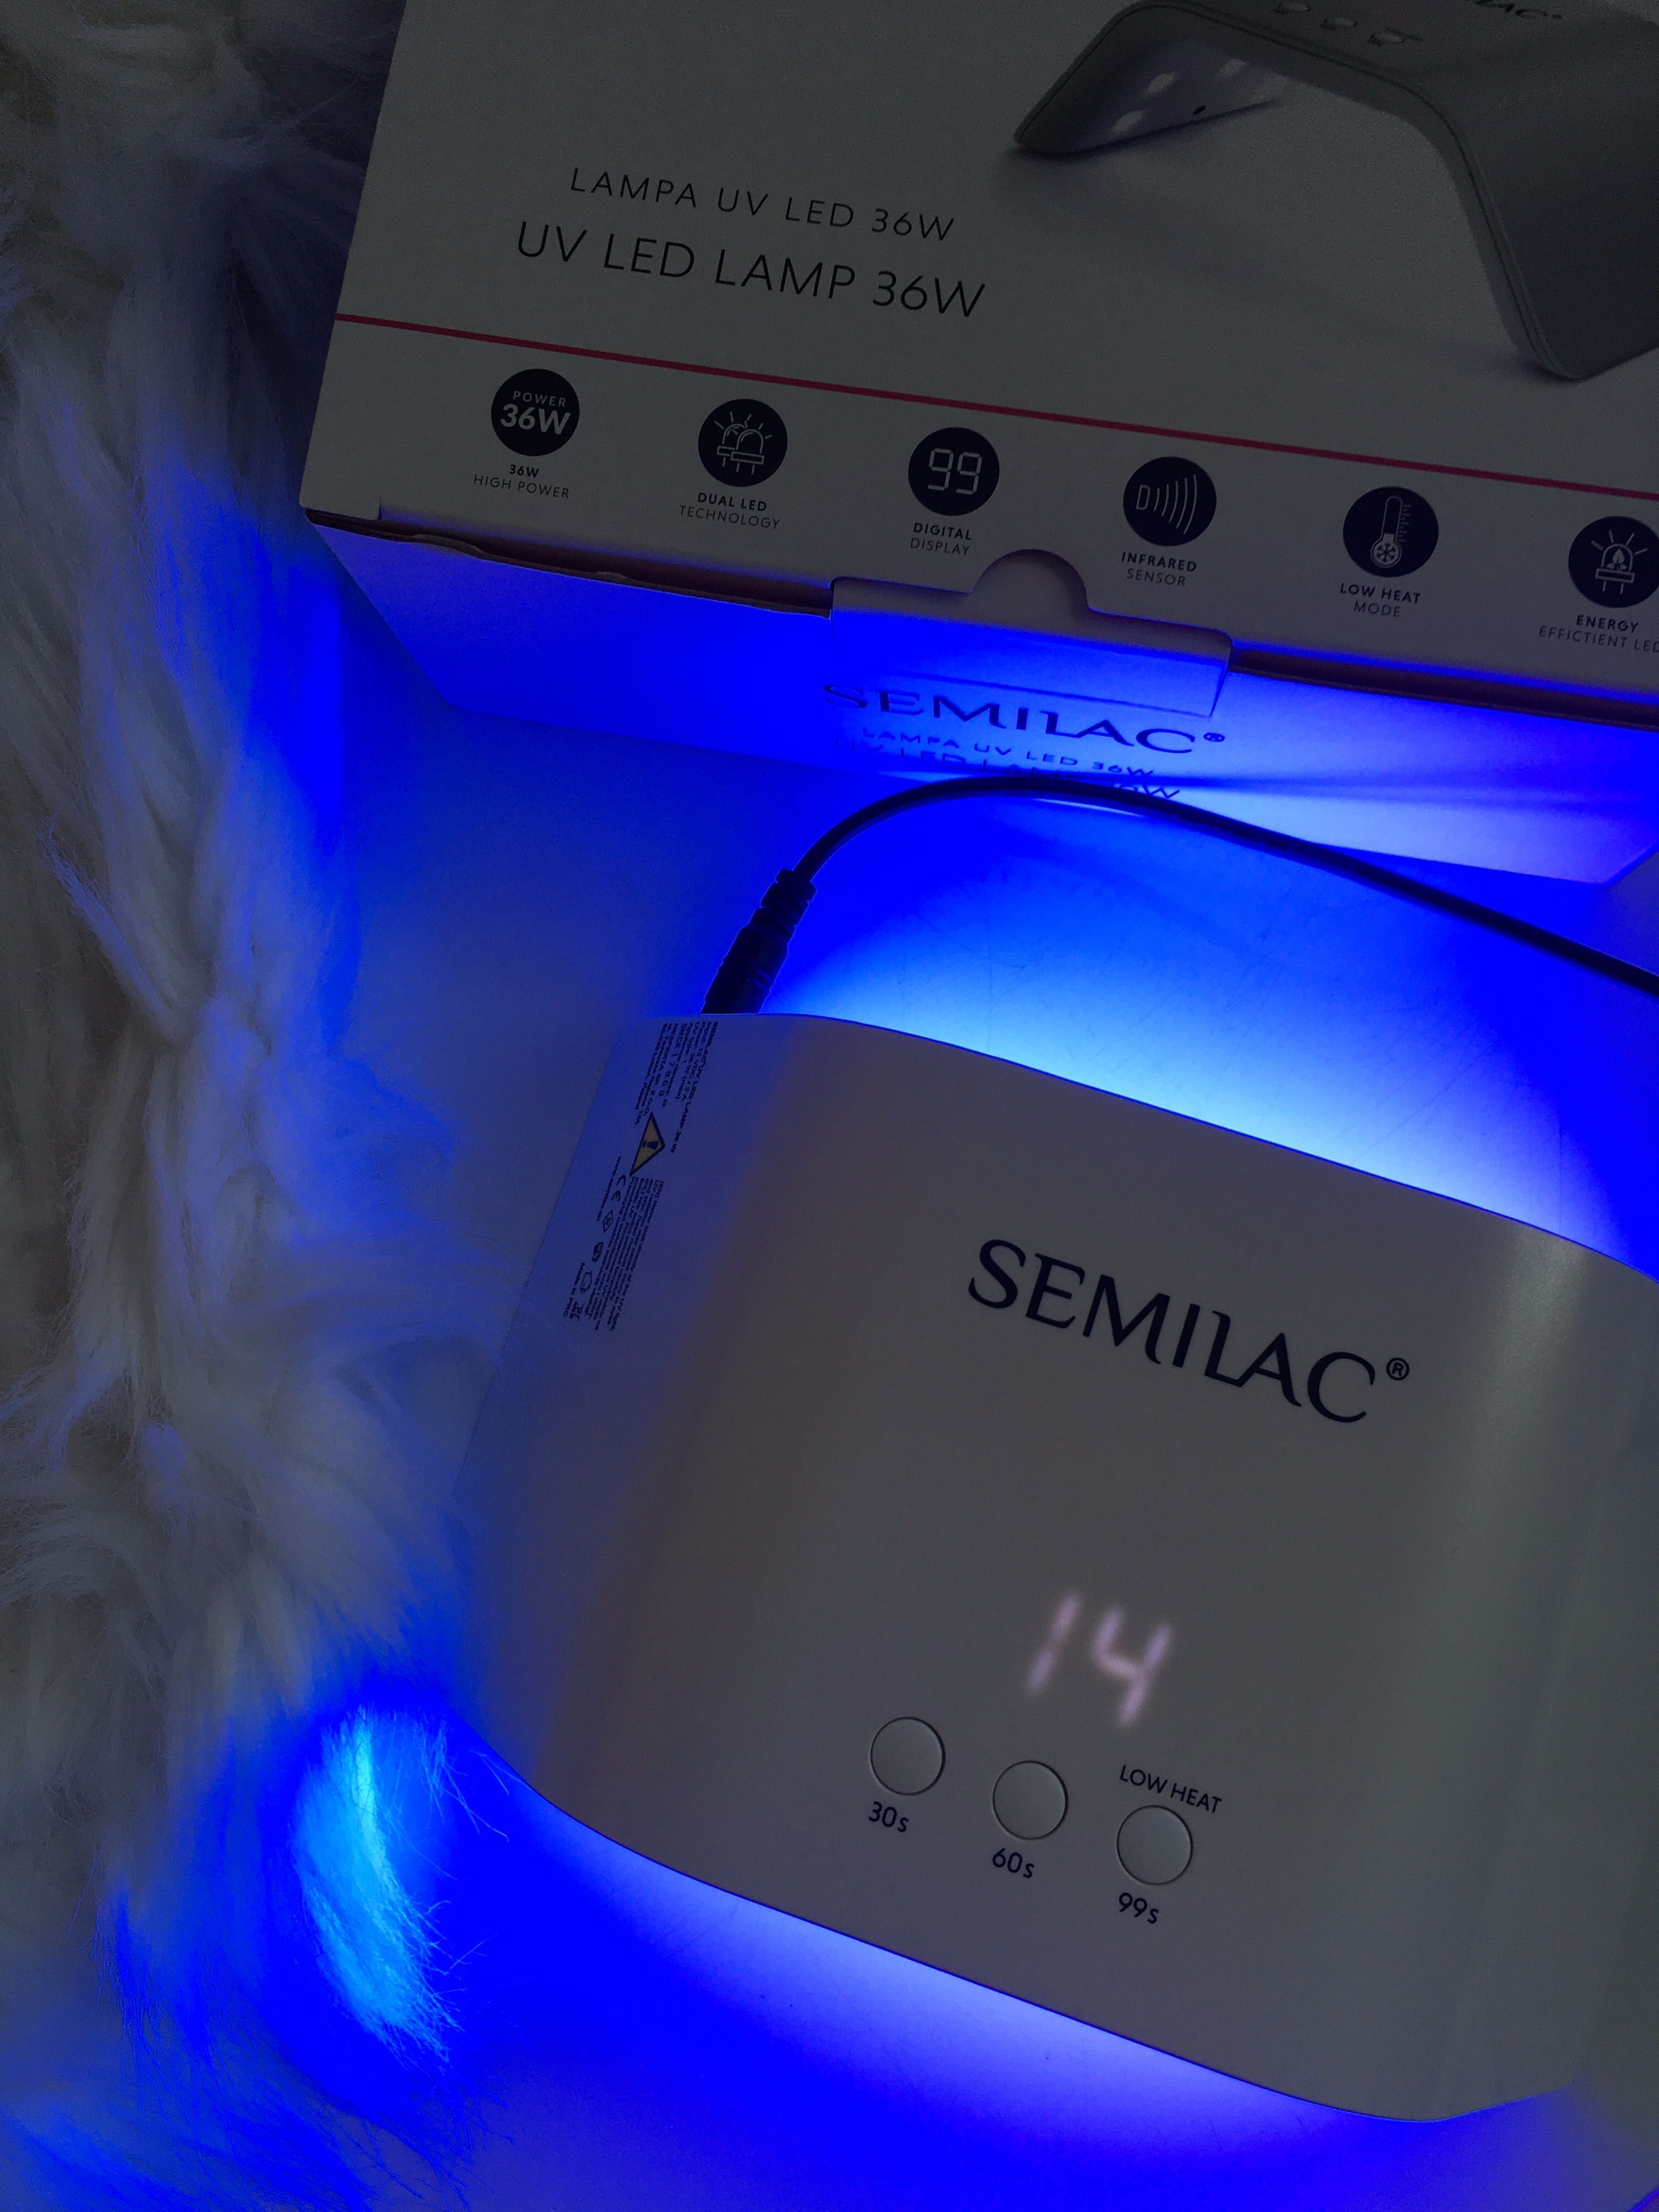 Lampa UV LED Lamp 36W Semilac